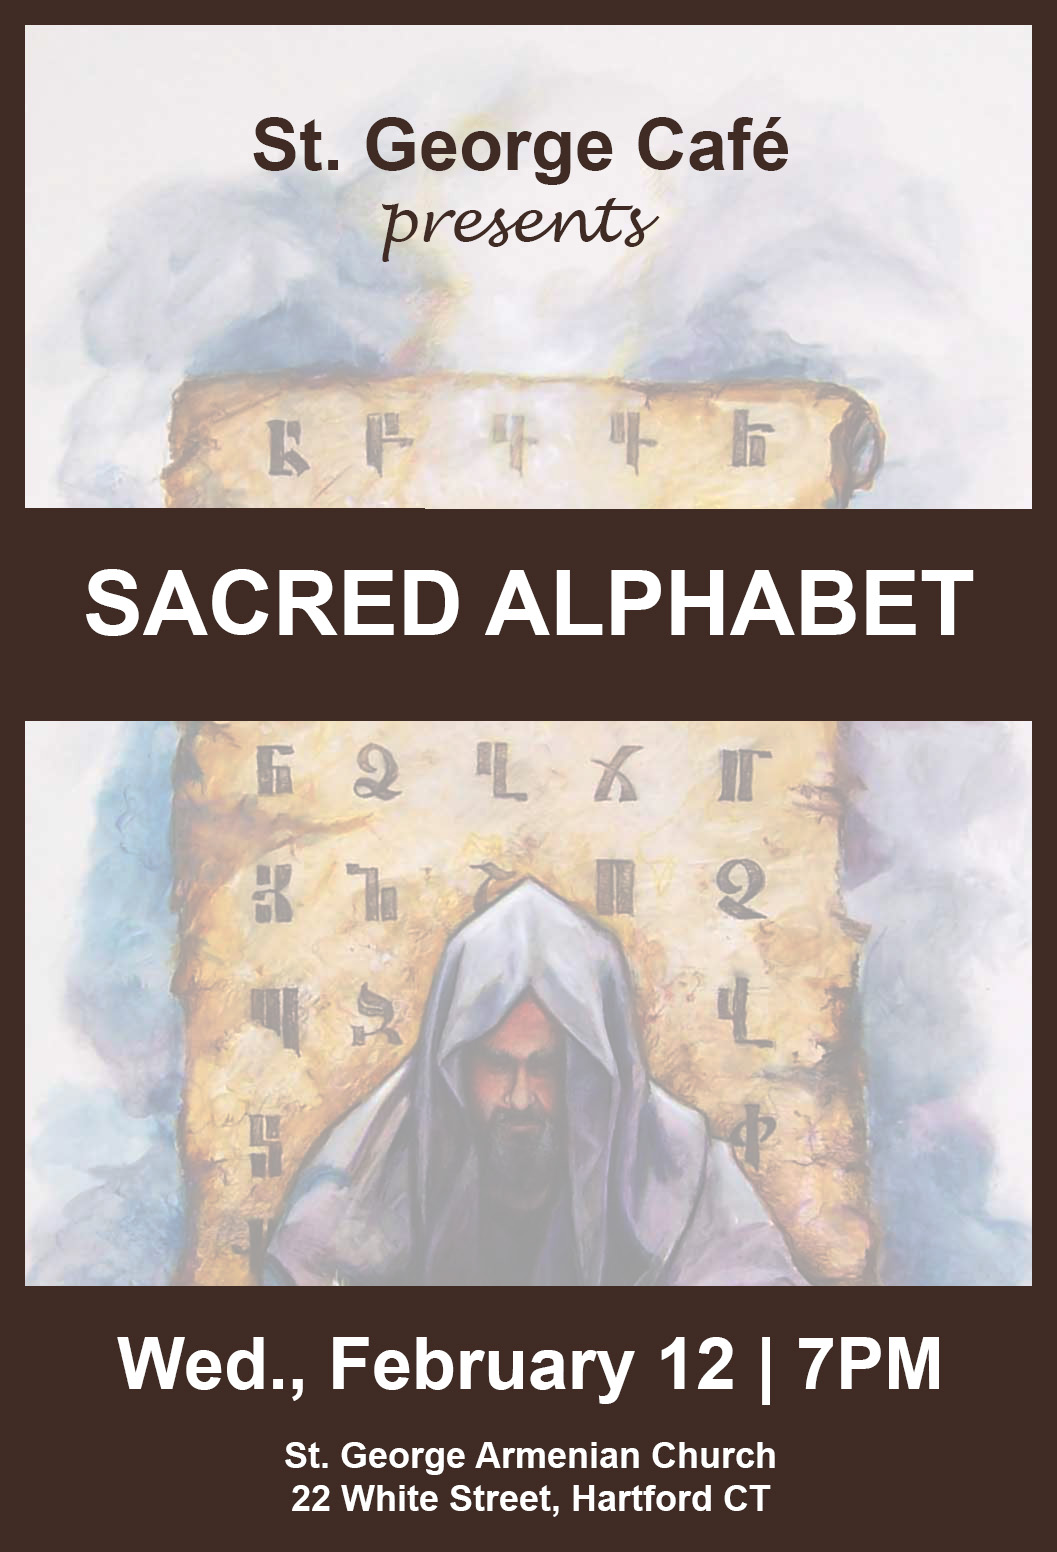 sacred alphabet